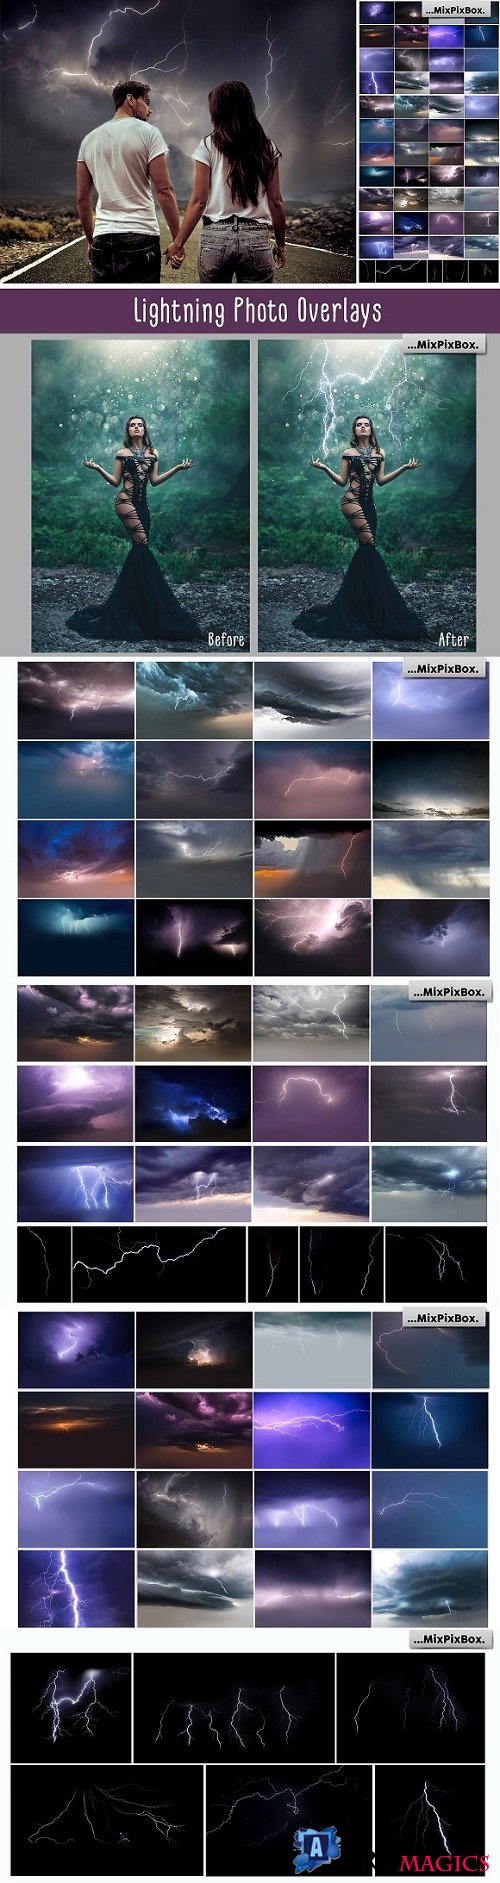 Lightning Photo Overlays - 2341348